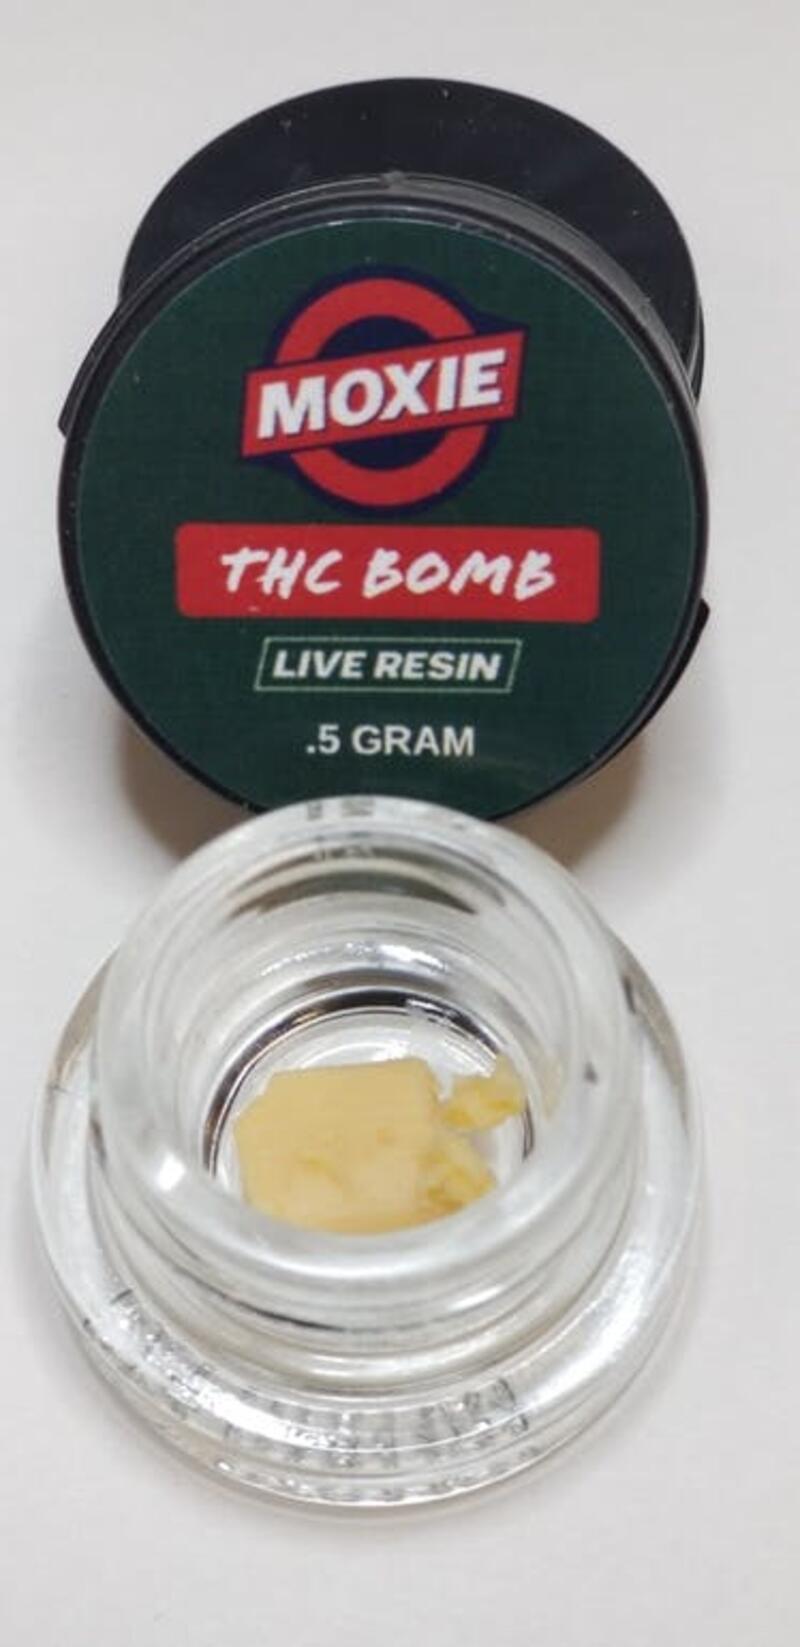 THC Bomb Live Resin Badder